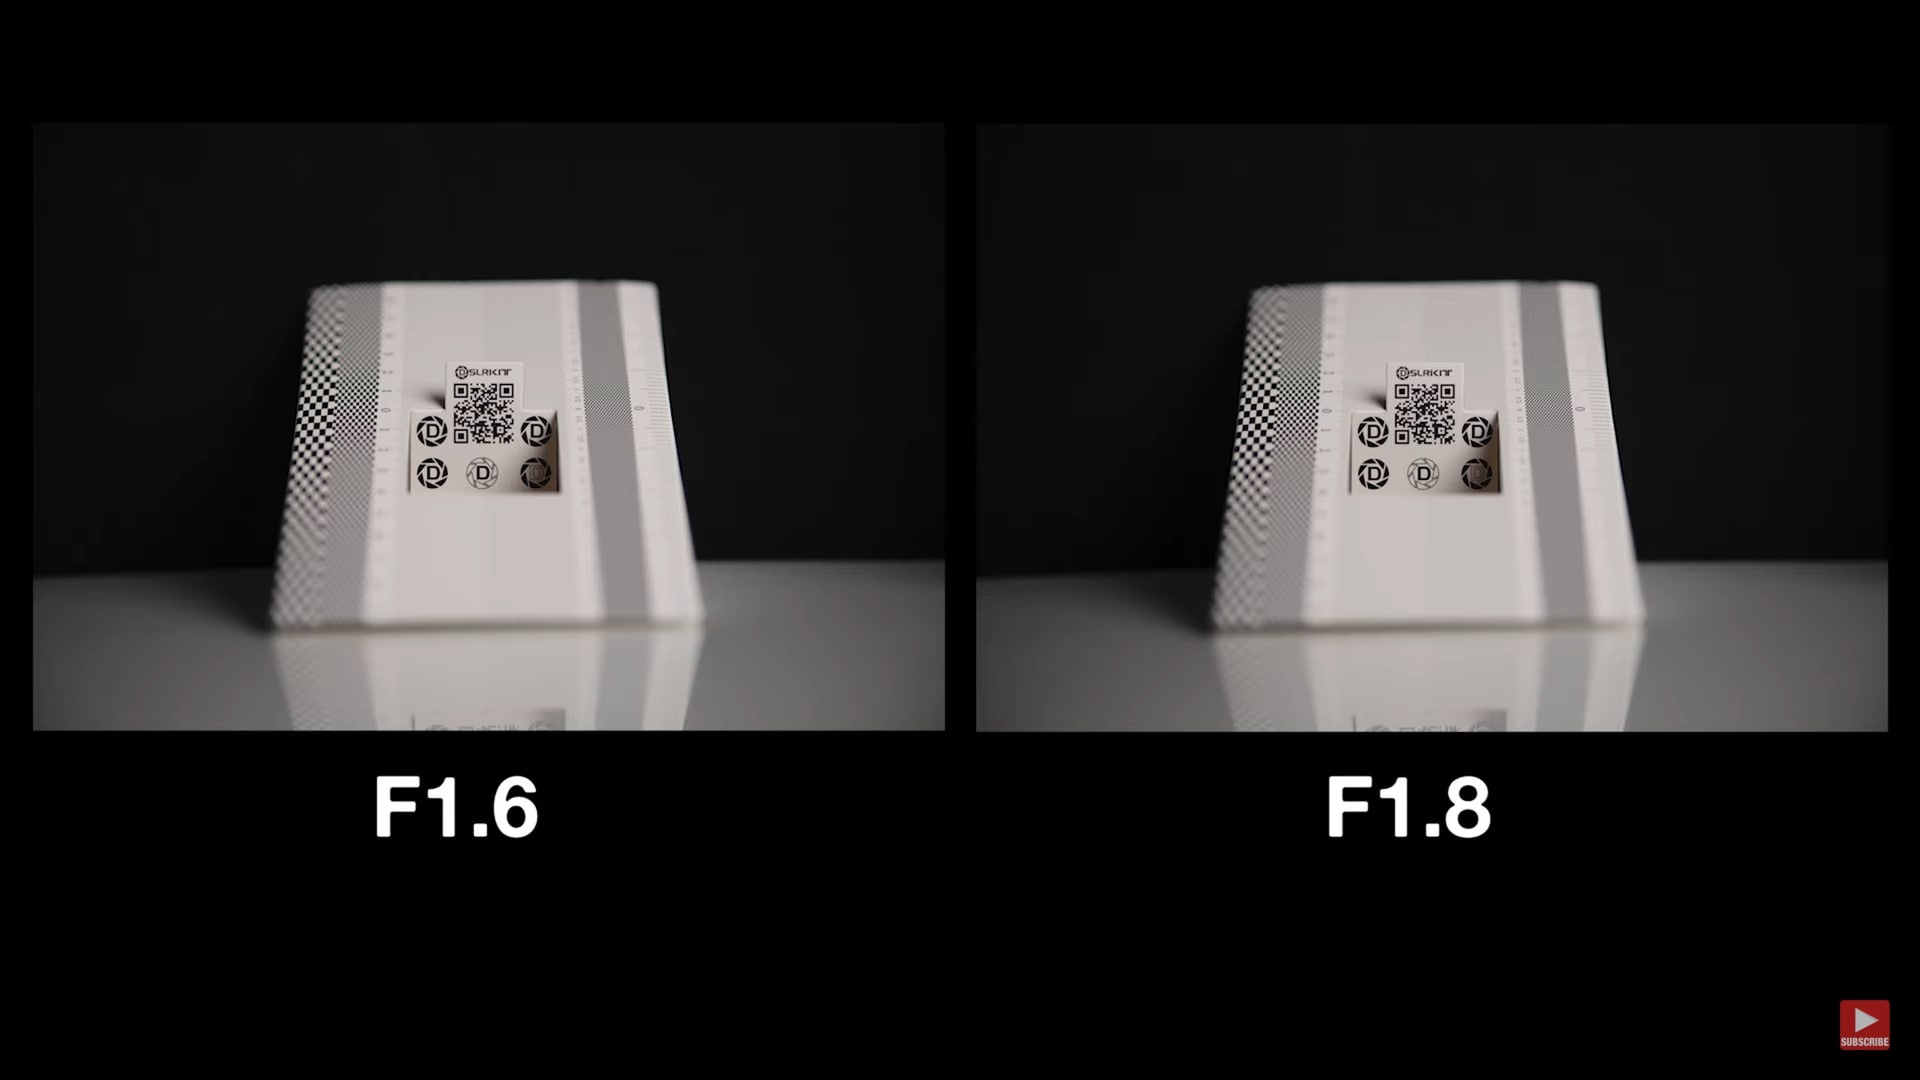 Ống kính Viltrox 85mm F1.8 cho Fujifilm và Sony được nâng cấp thành F1.6 sau khi cập nhật firmware